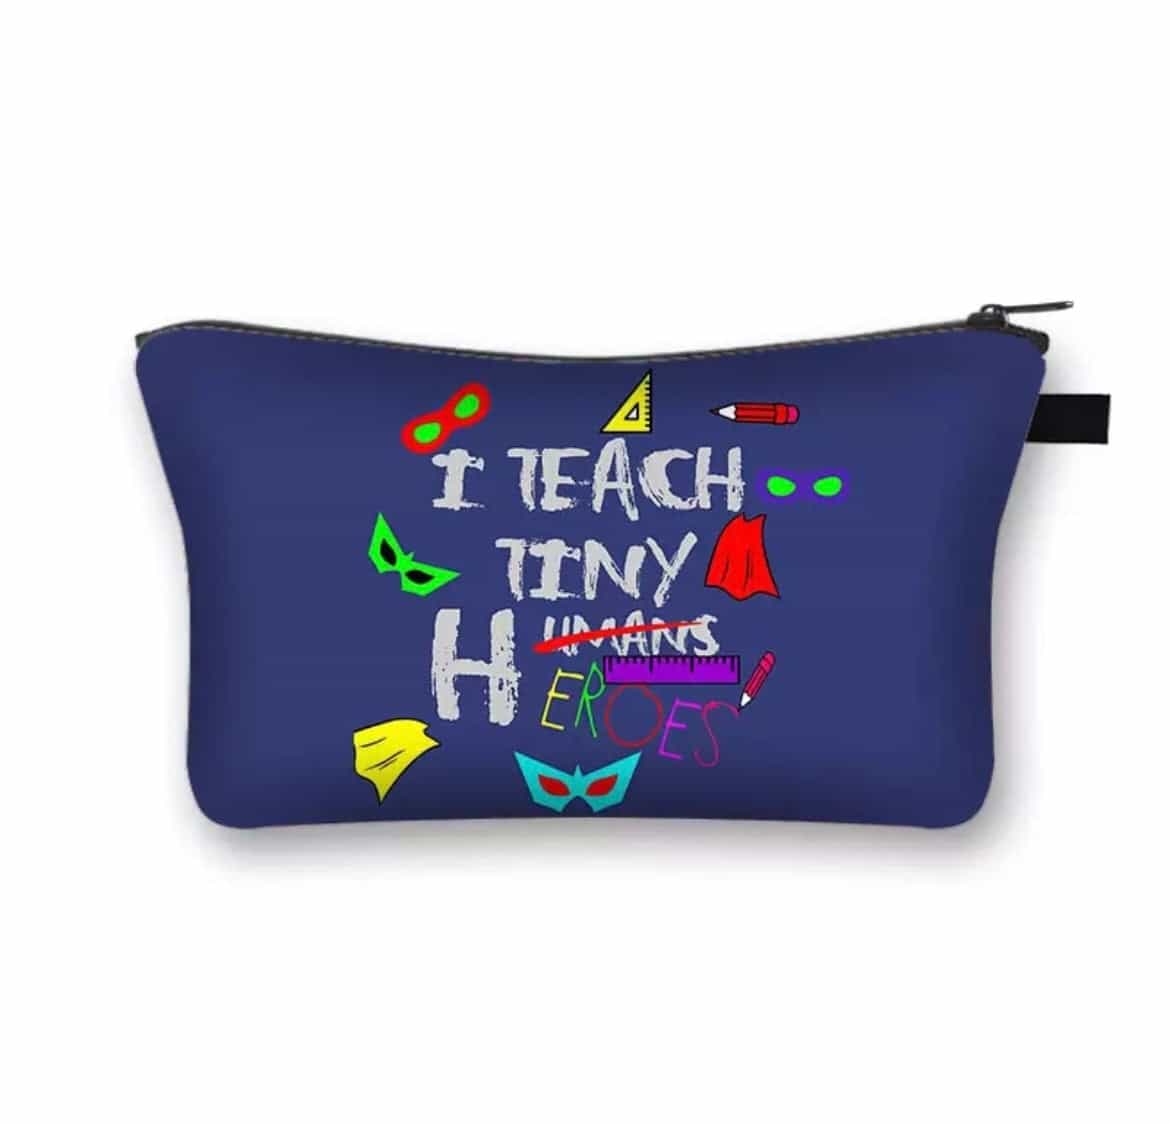 Teacher’s Pouch-Teacher's Pouch-All-Times-Gifts